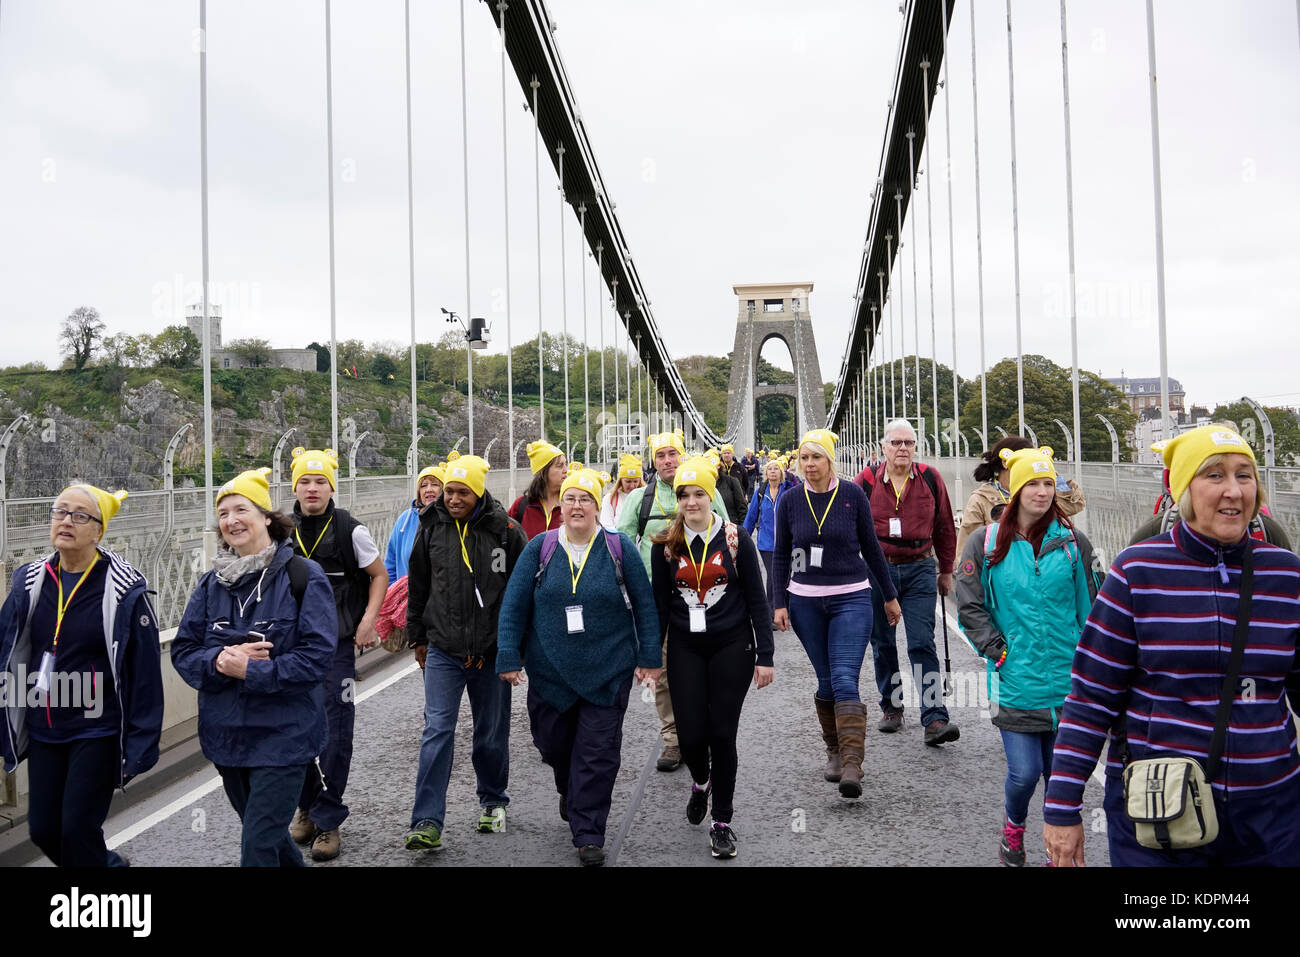 Bristol, Großbritannien, 15. Oktober 2017. liebe Wanderer die Clifton Suspension Bridge Kreuz während der countryfile Ramble, zugunsten der bbc Children in Need". die Brücke für den Verkehr um 11.30 Uhr für ca. 20 Minuten filmen des Ereignisses zu ermöglichen. Die geschlossen wurde: mfimage/alamy leben Nachrichten Stockfoto